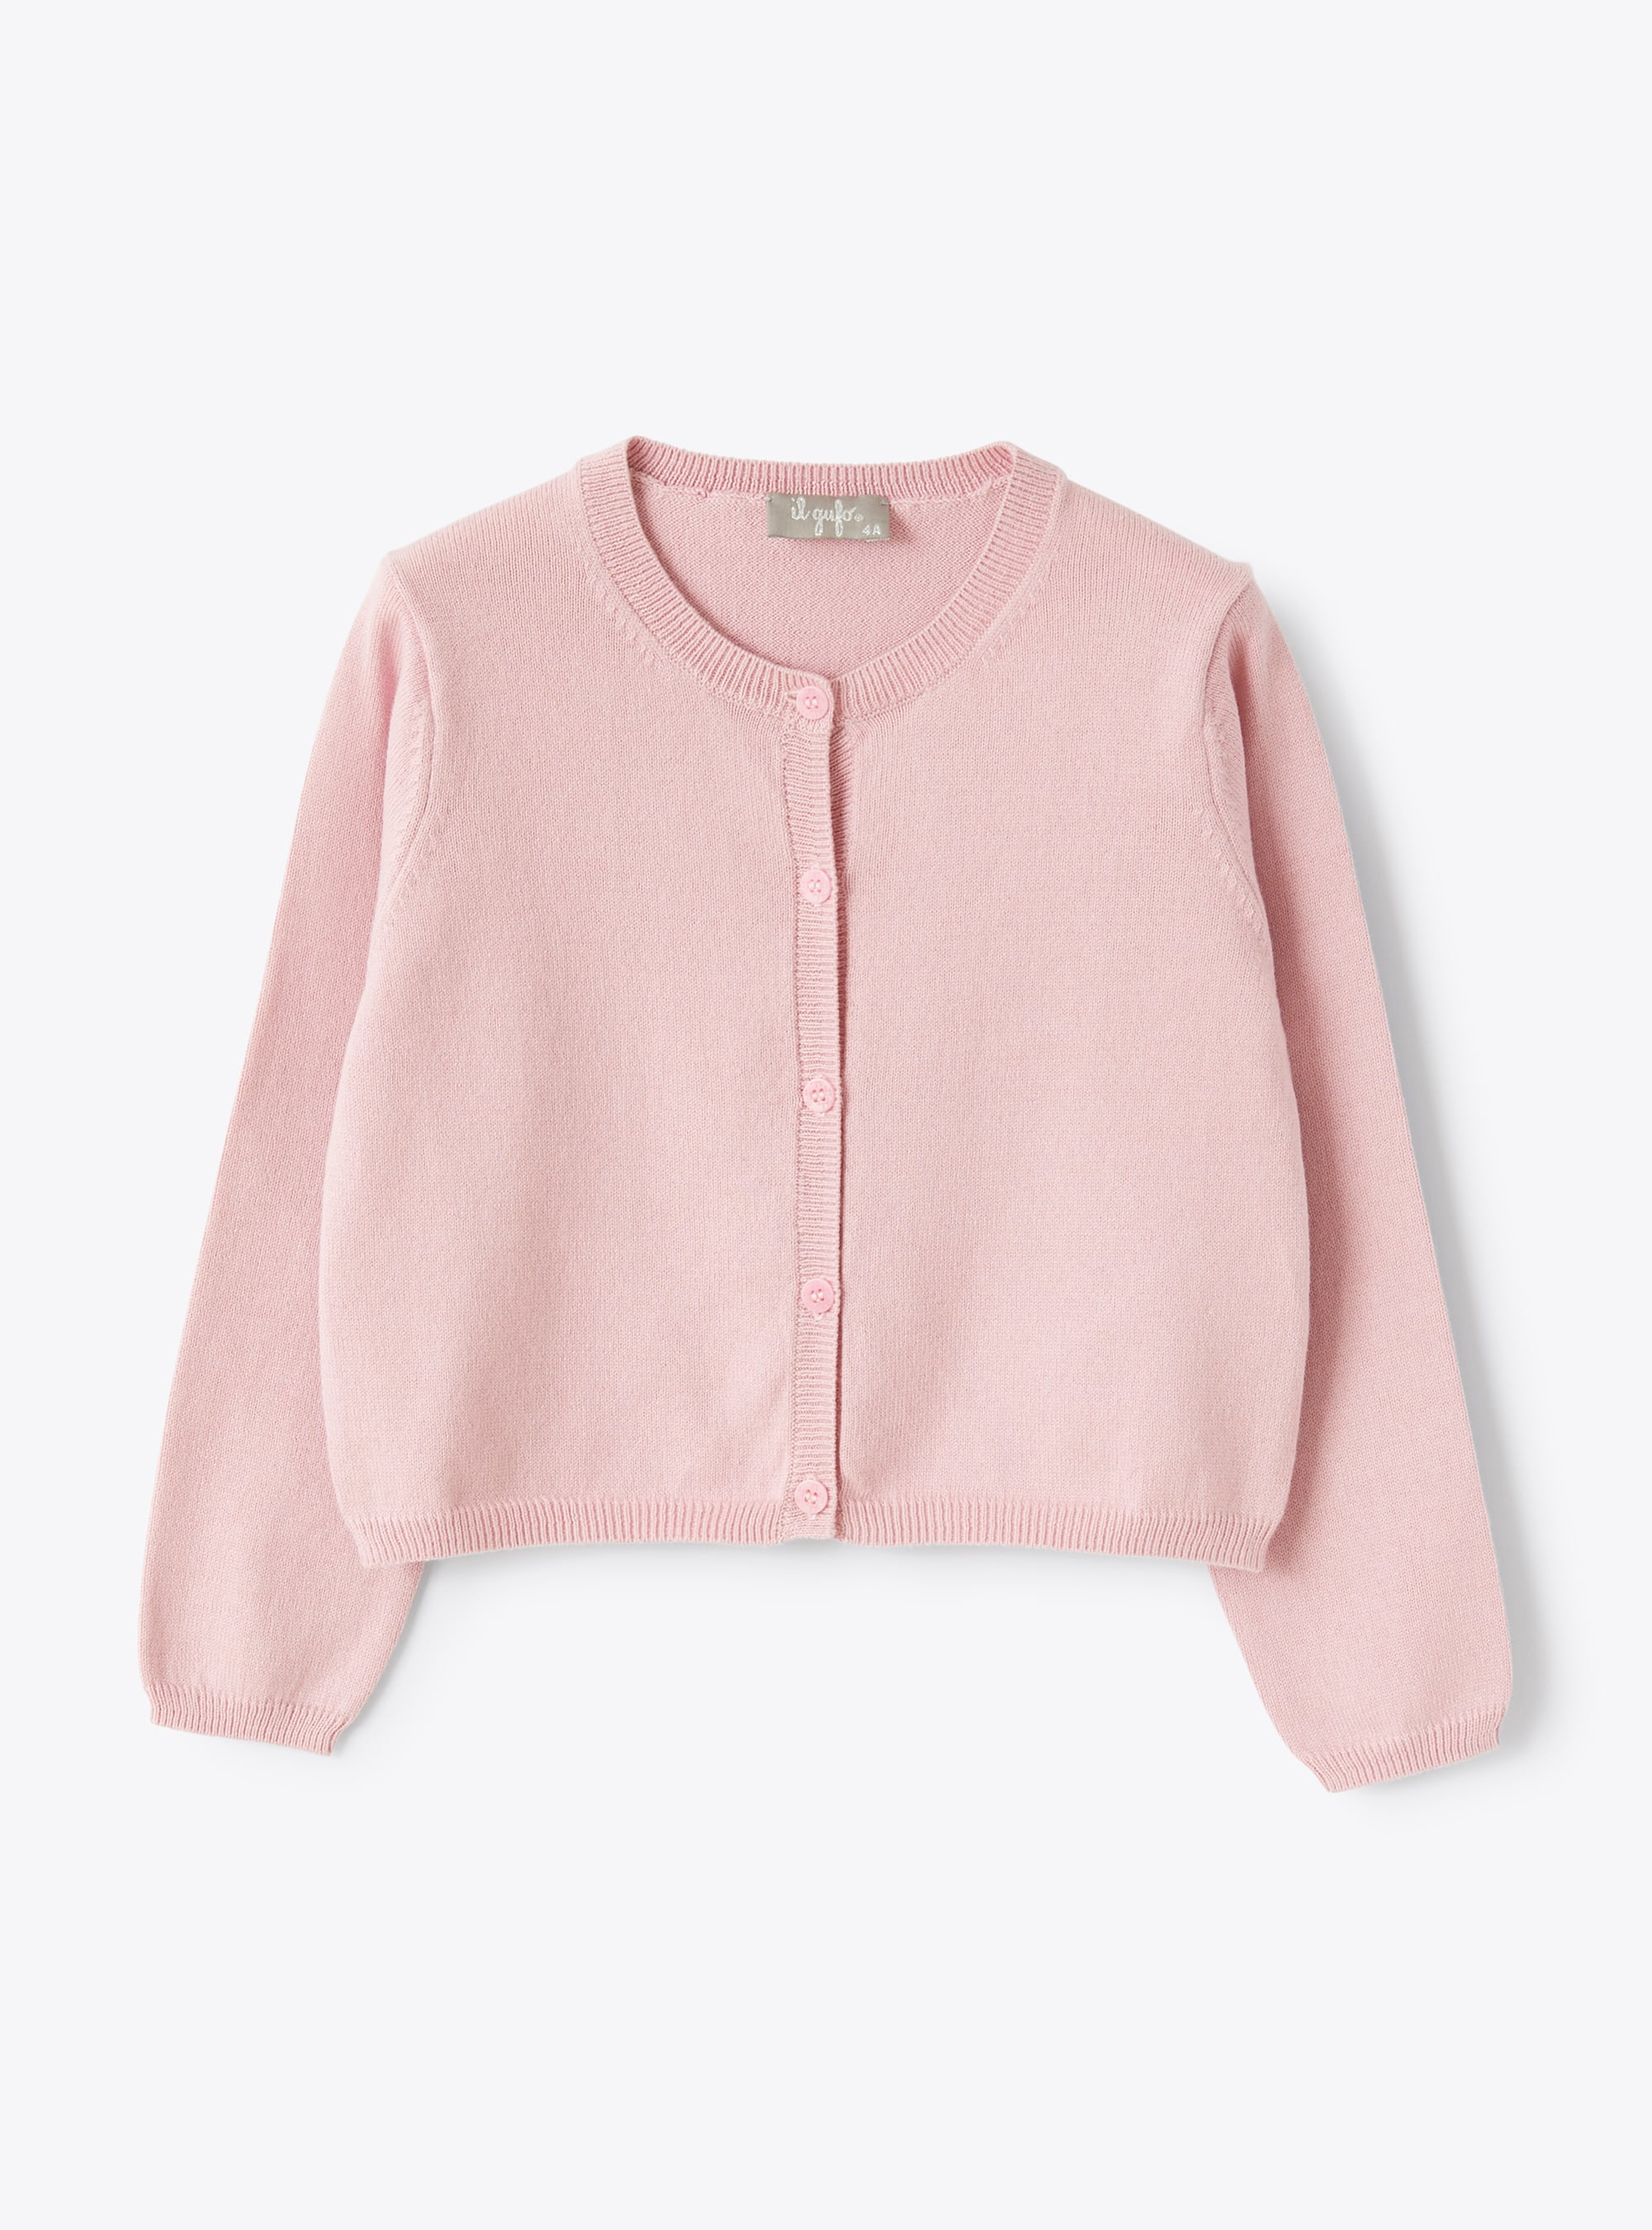 Cardigan in pink organic cotton - Sweaters - Il Gufo